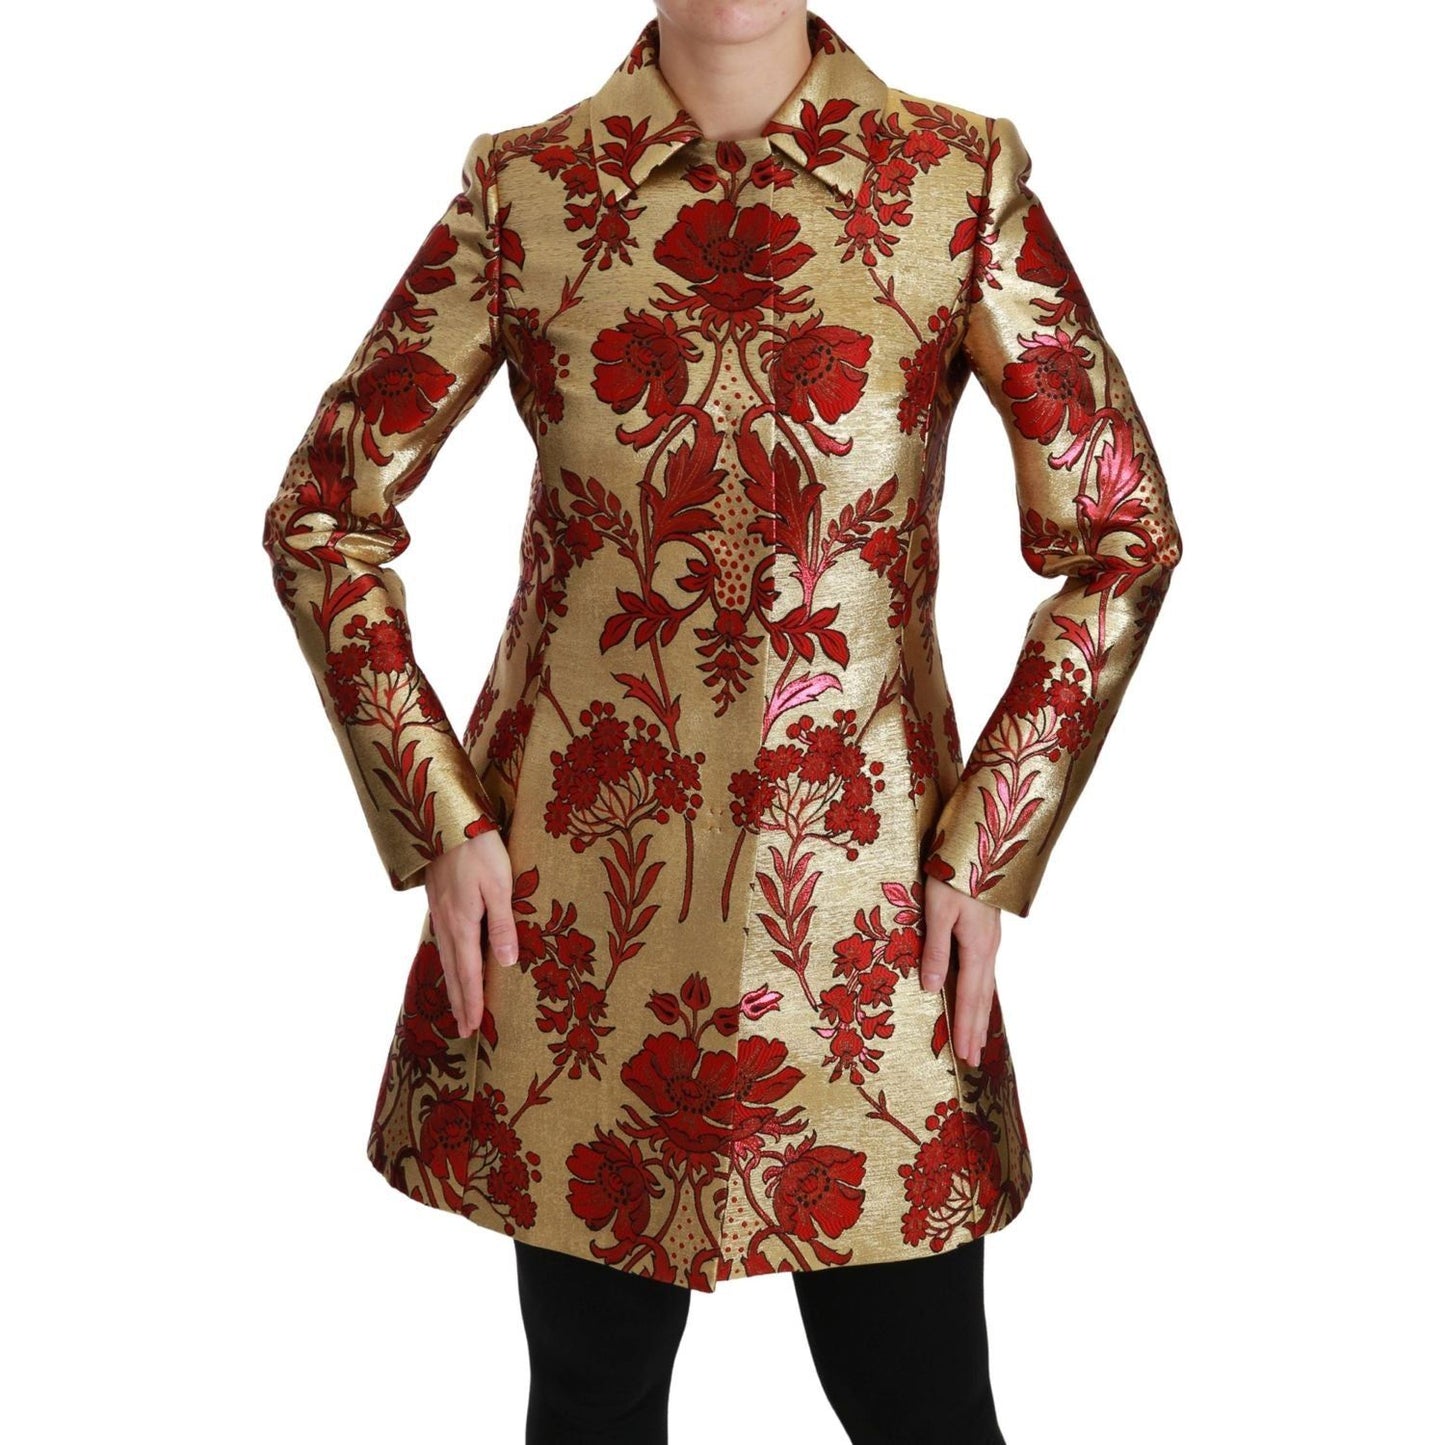 Dolce & Gabbana Elegant Gold Floral Brocade Trench Coat Coats & Jackets red-gold-floral-brocade-cape-coat-jacket